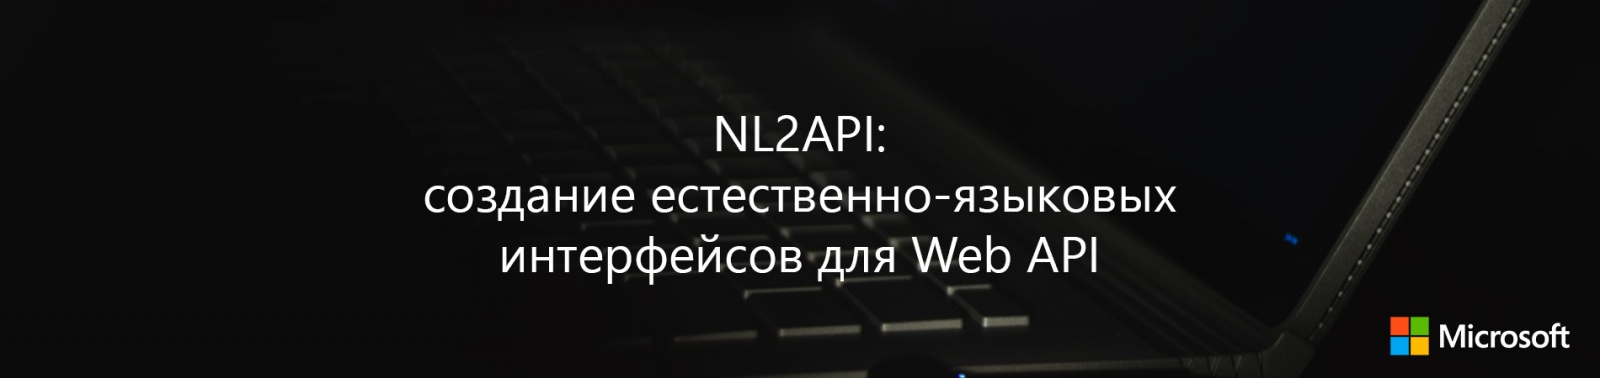 NL2API: создание естественно-языковых интерфейсов для Web API - 1